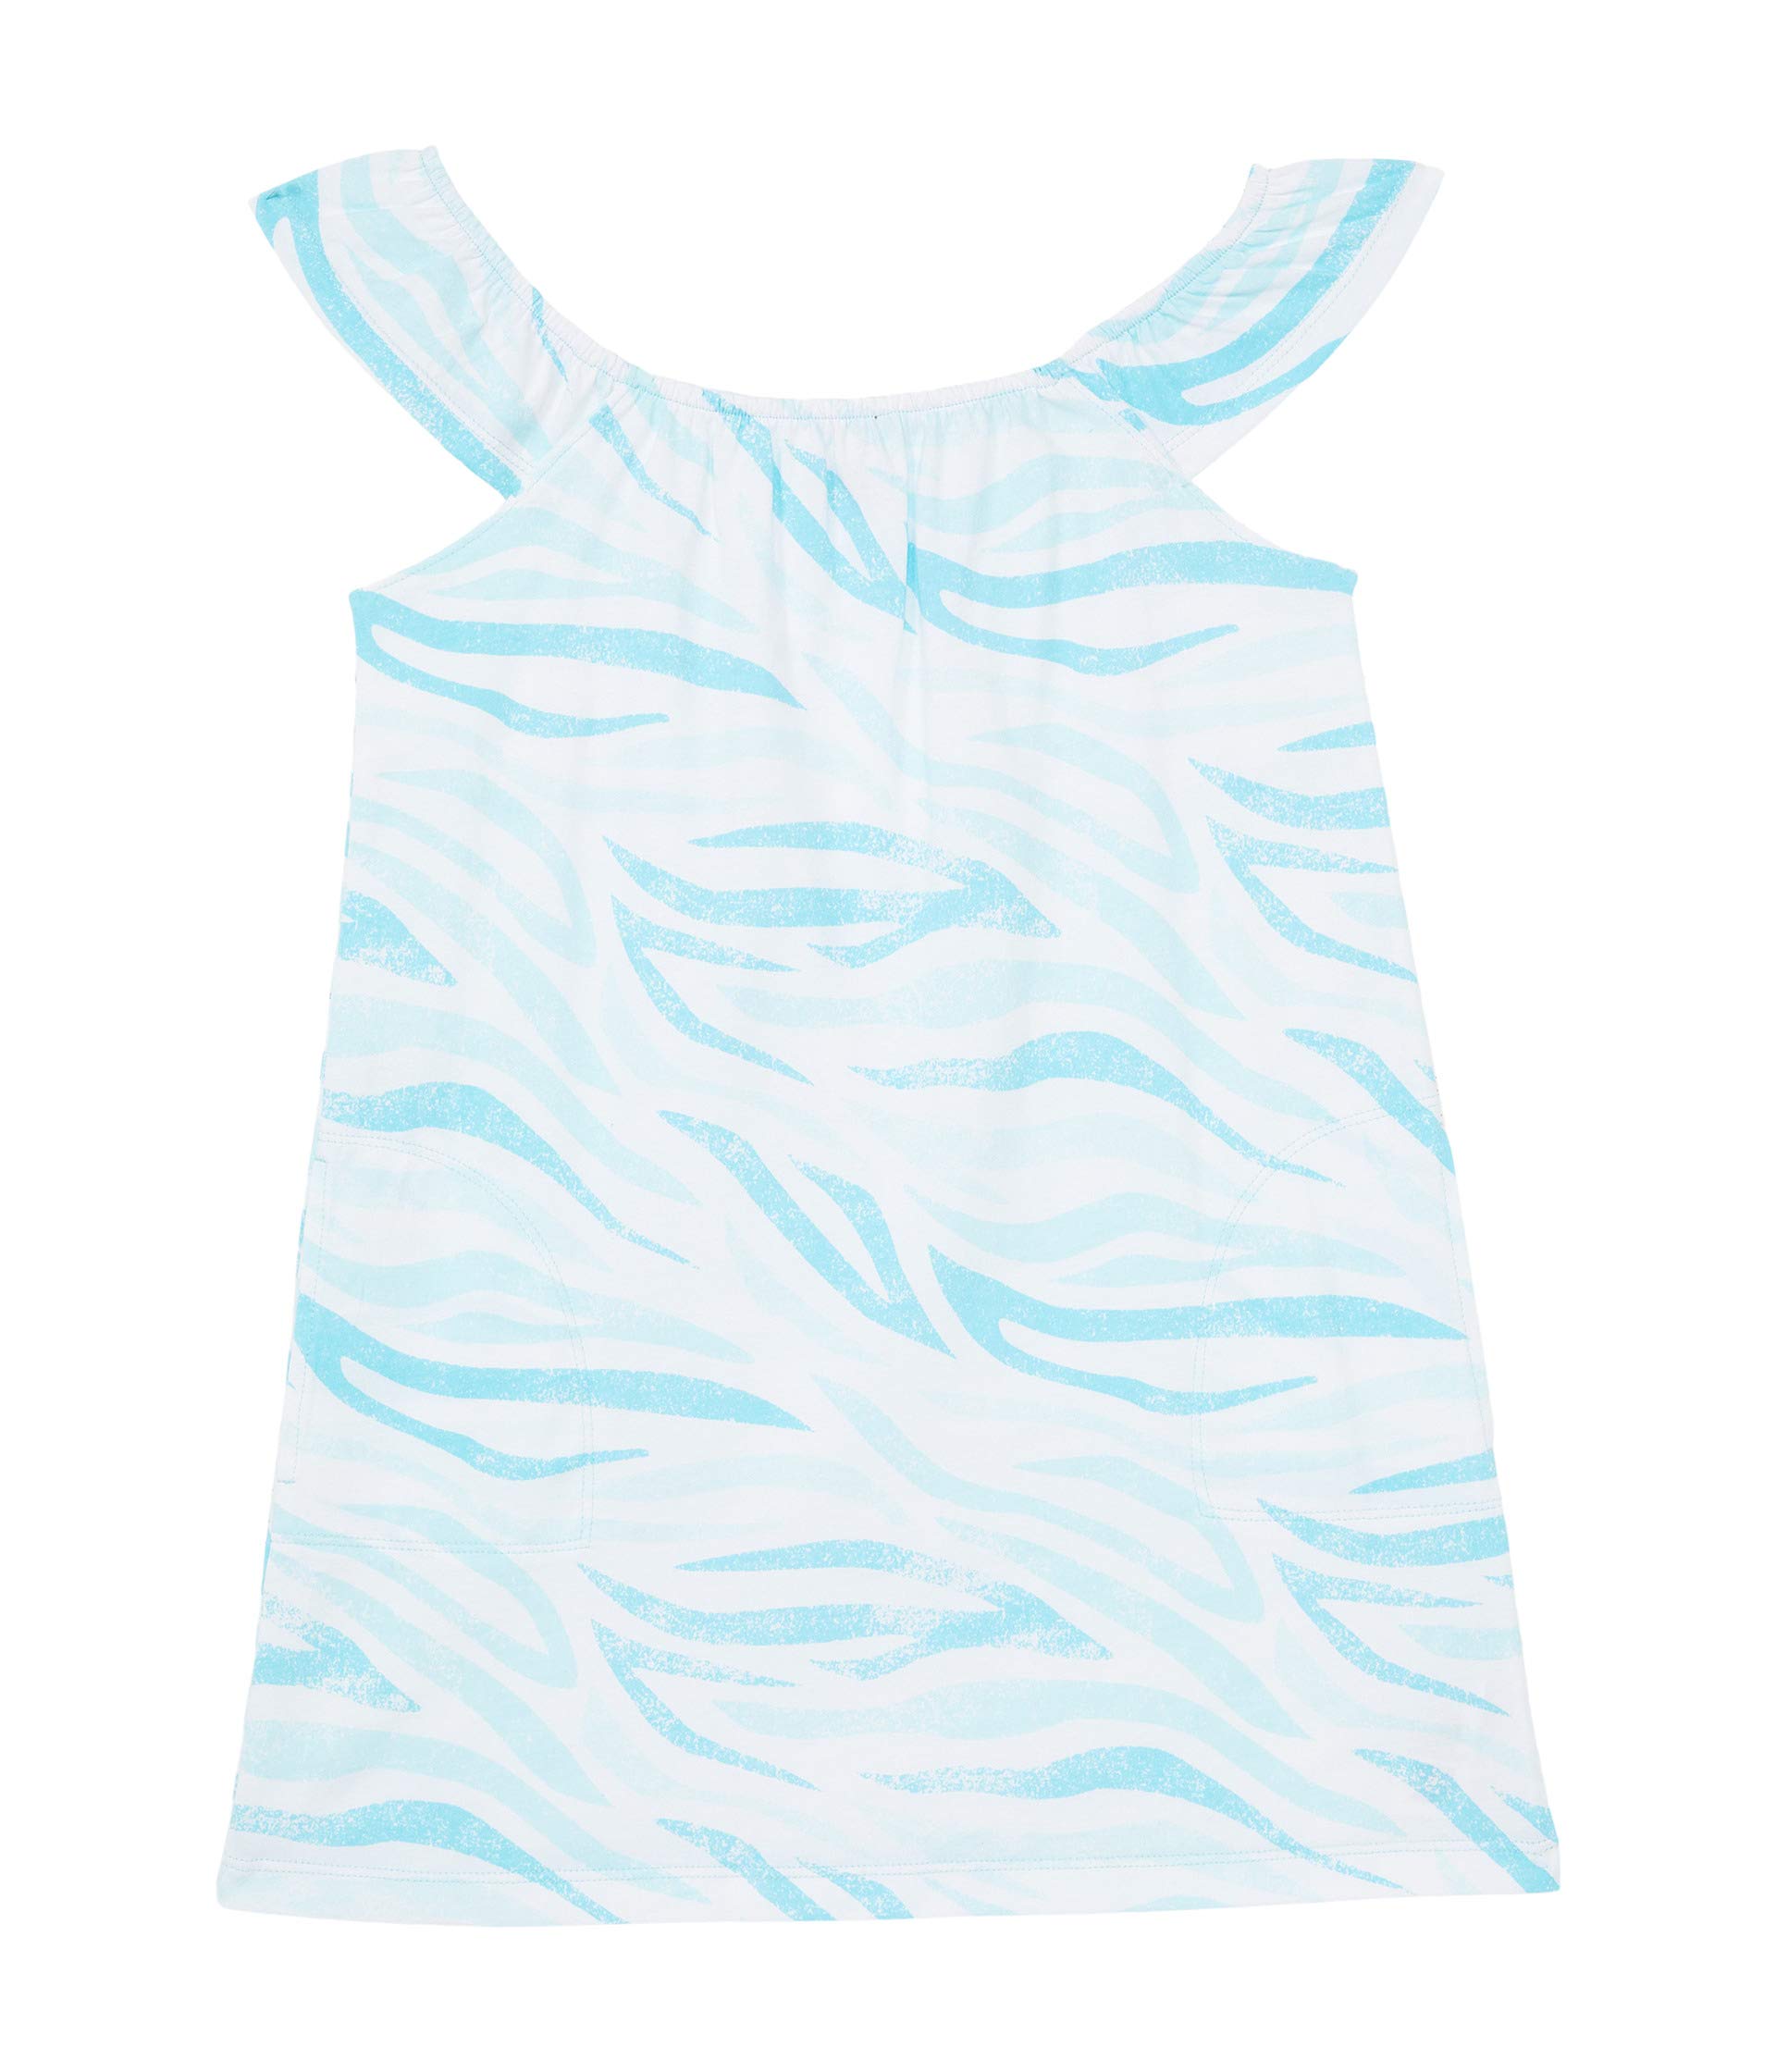 Платье Splendid Littles, Aqua Zebra Print Dress brown laaren splendid sea creatures